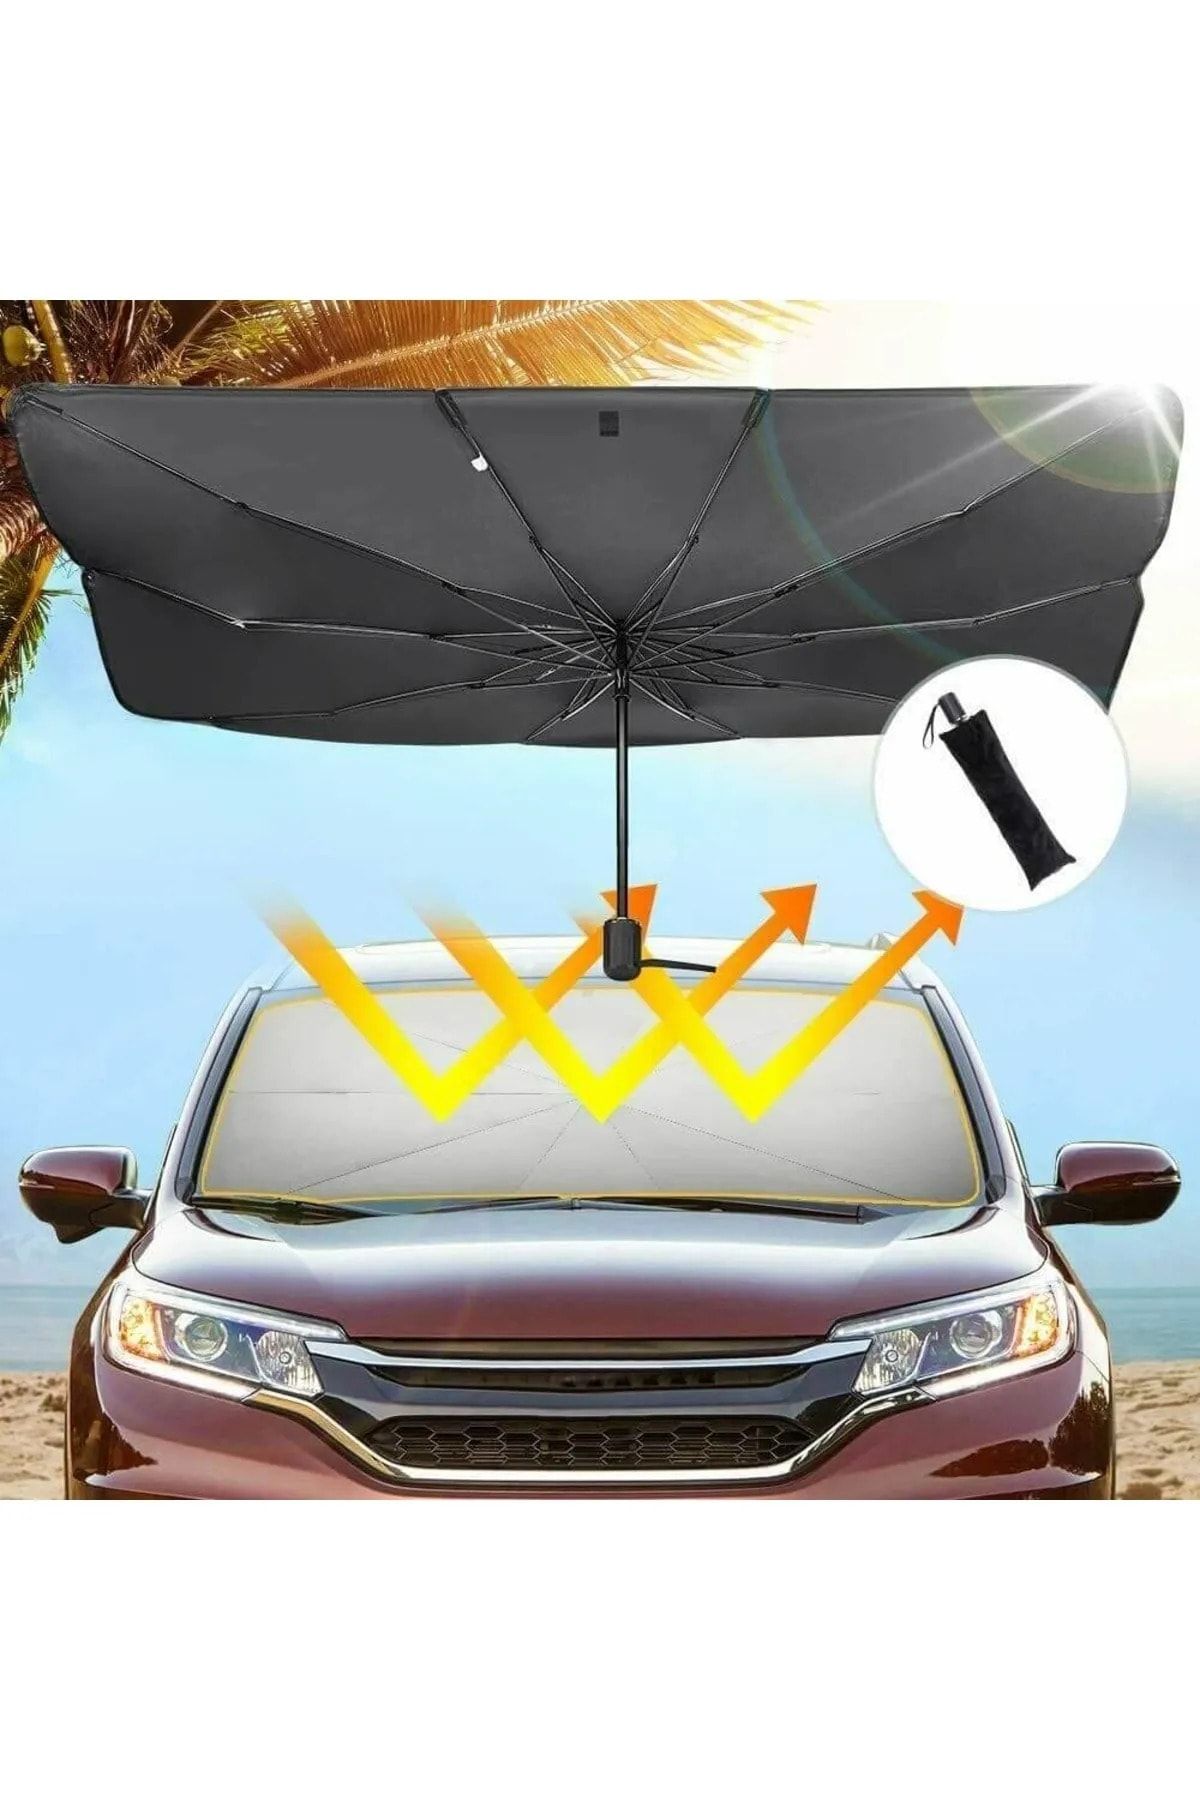 Universal Nissan Patrol Araba Ön Cam Güneşlik Katlanabilir Güneşlik Şemsiye Ön Cam Gölgelik